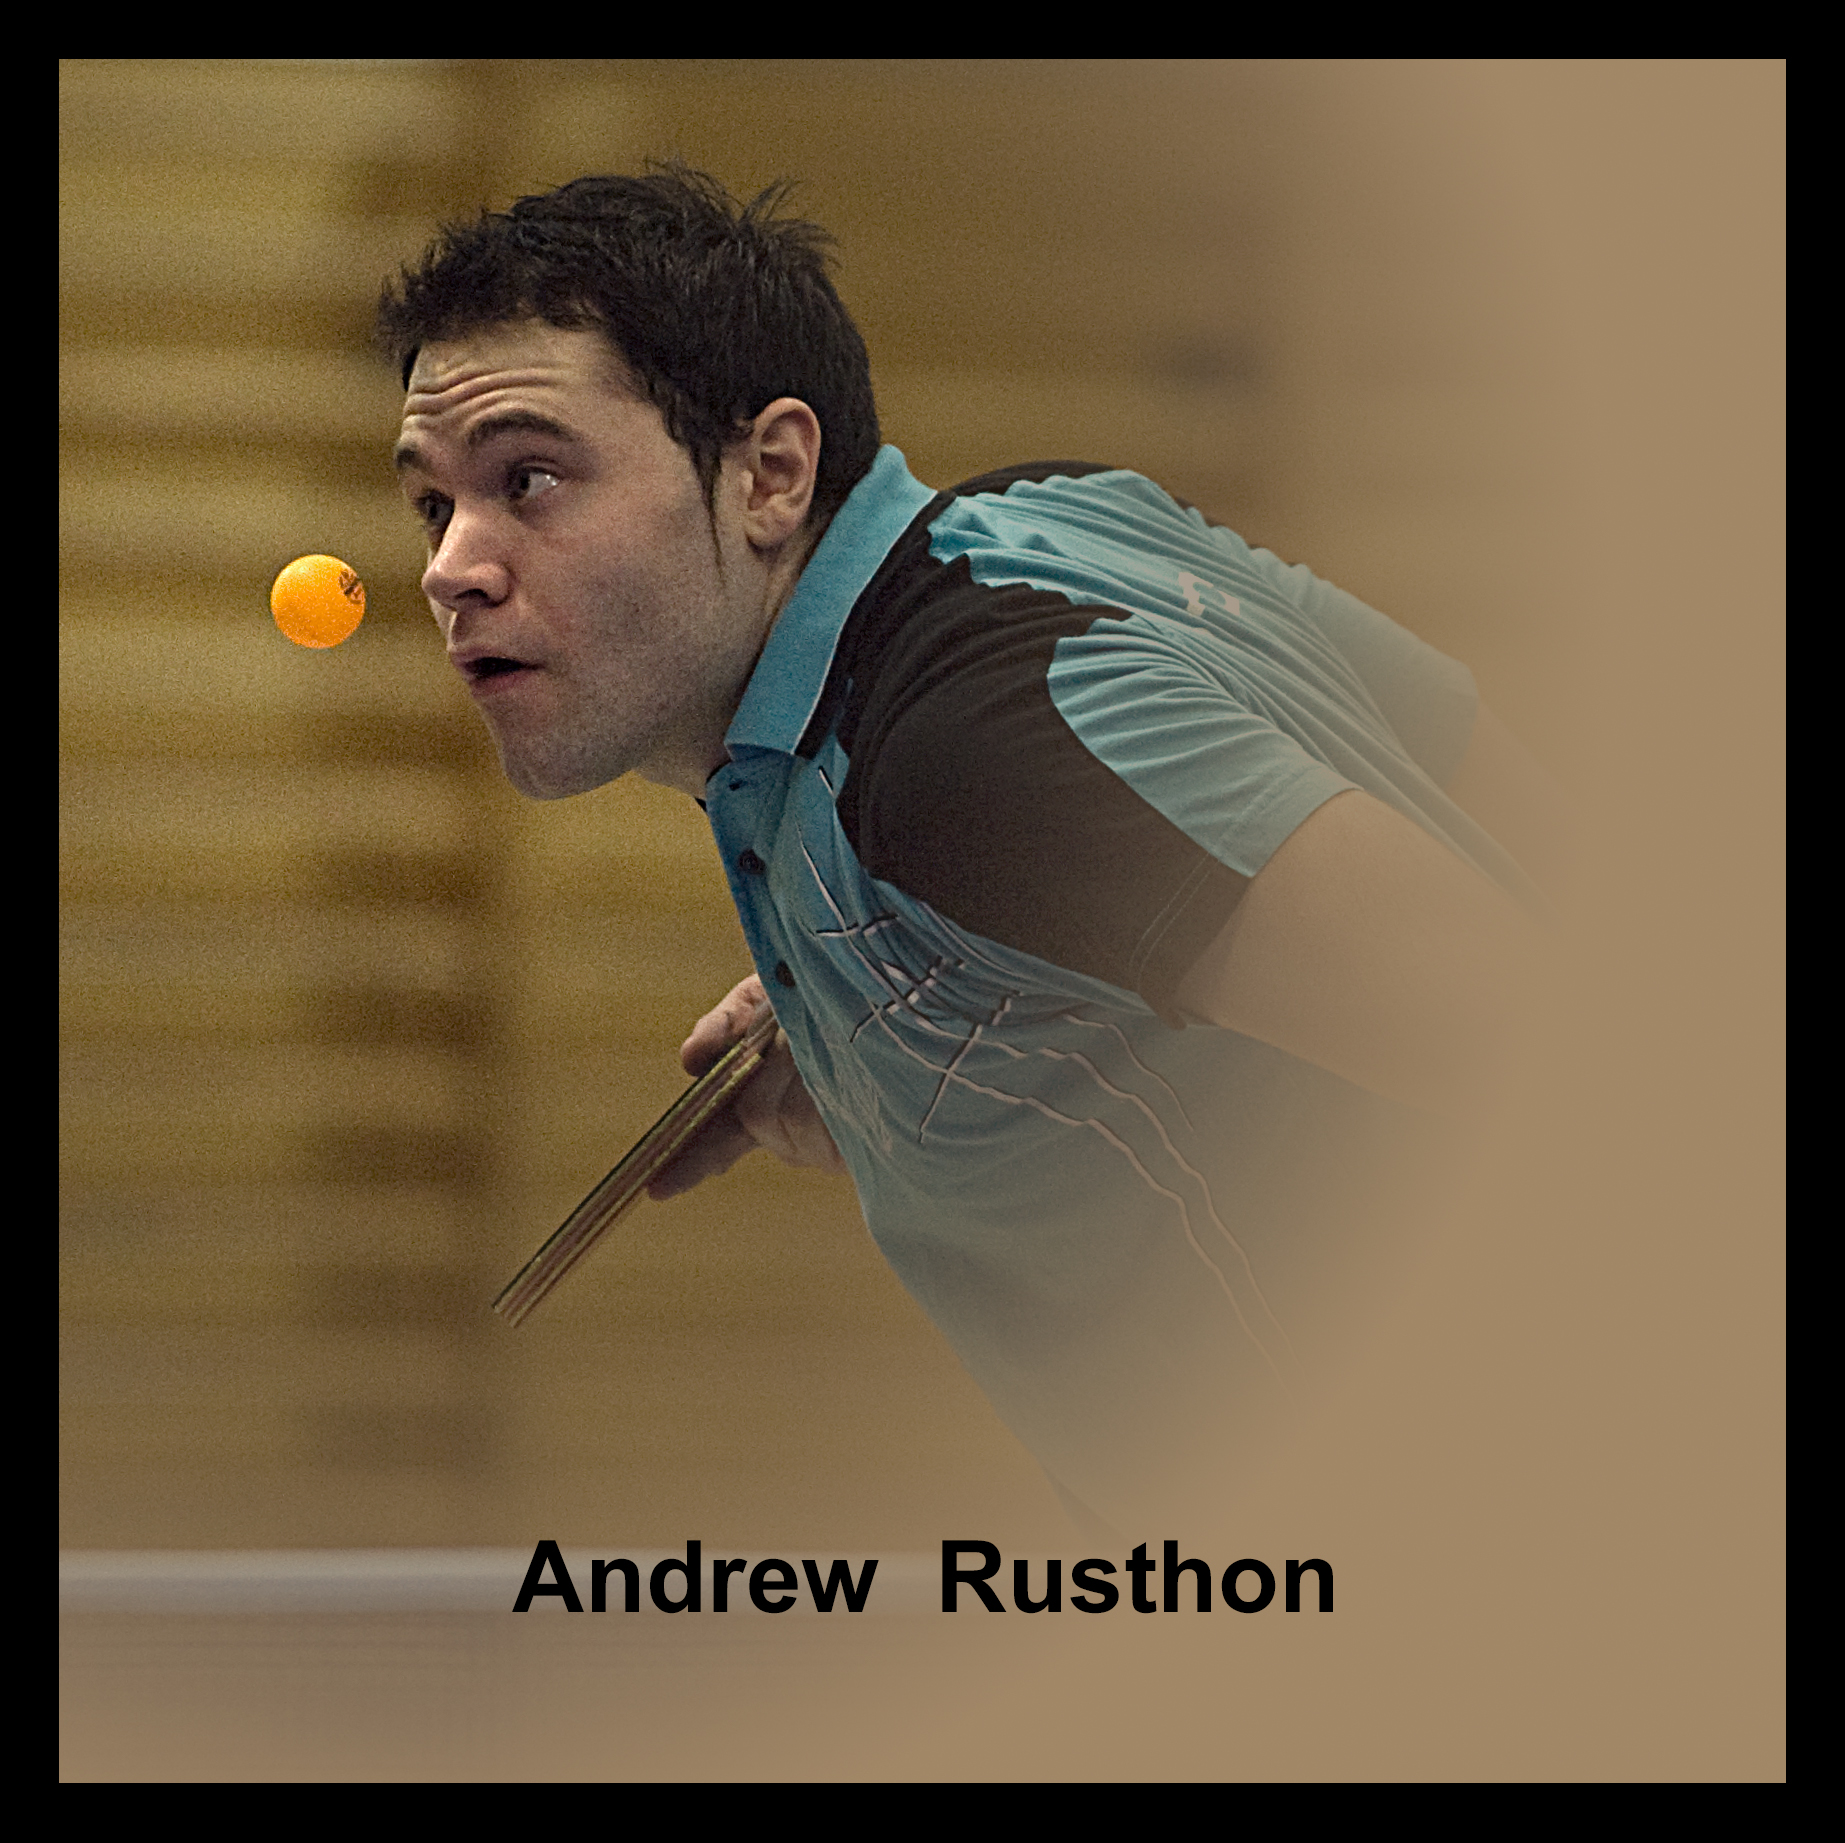 Andrew Rusthon